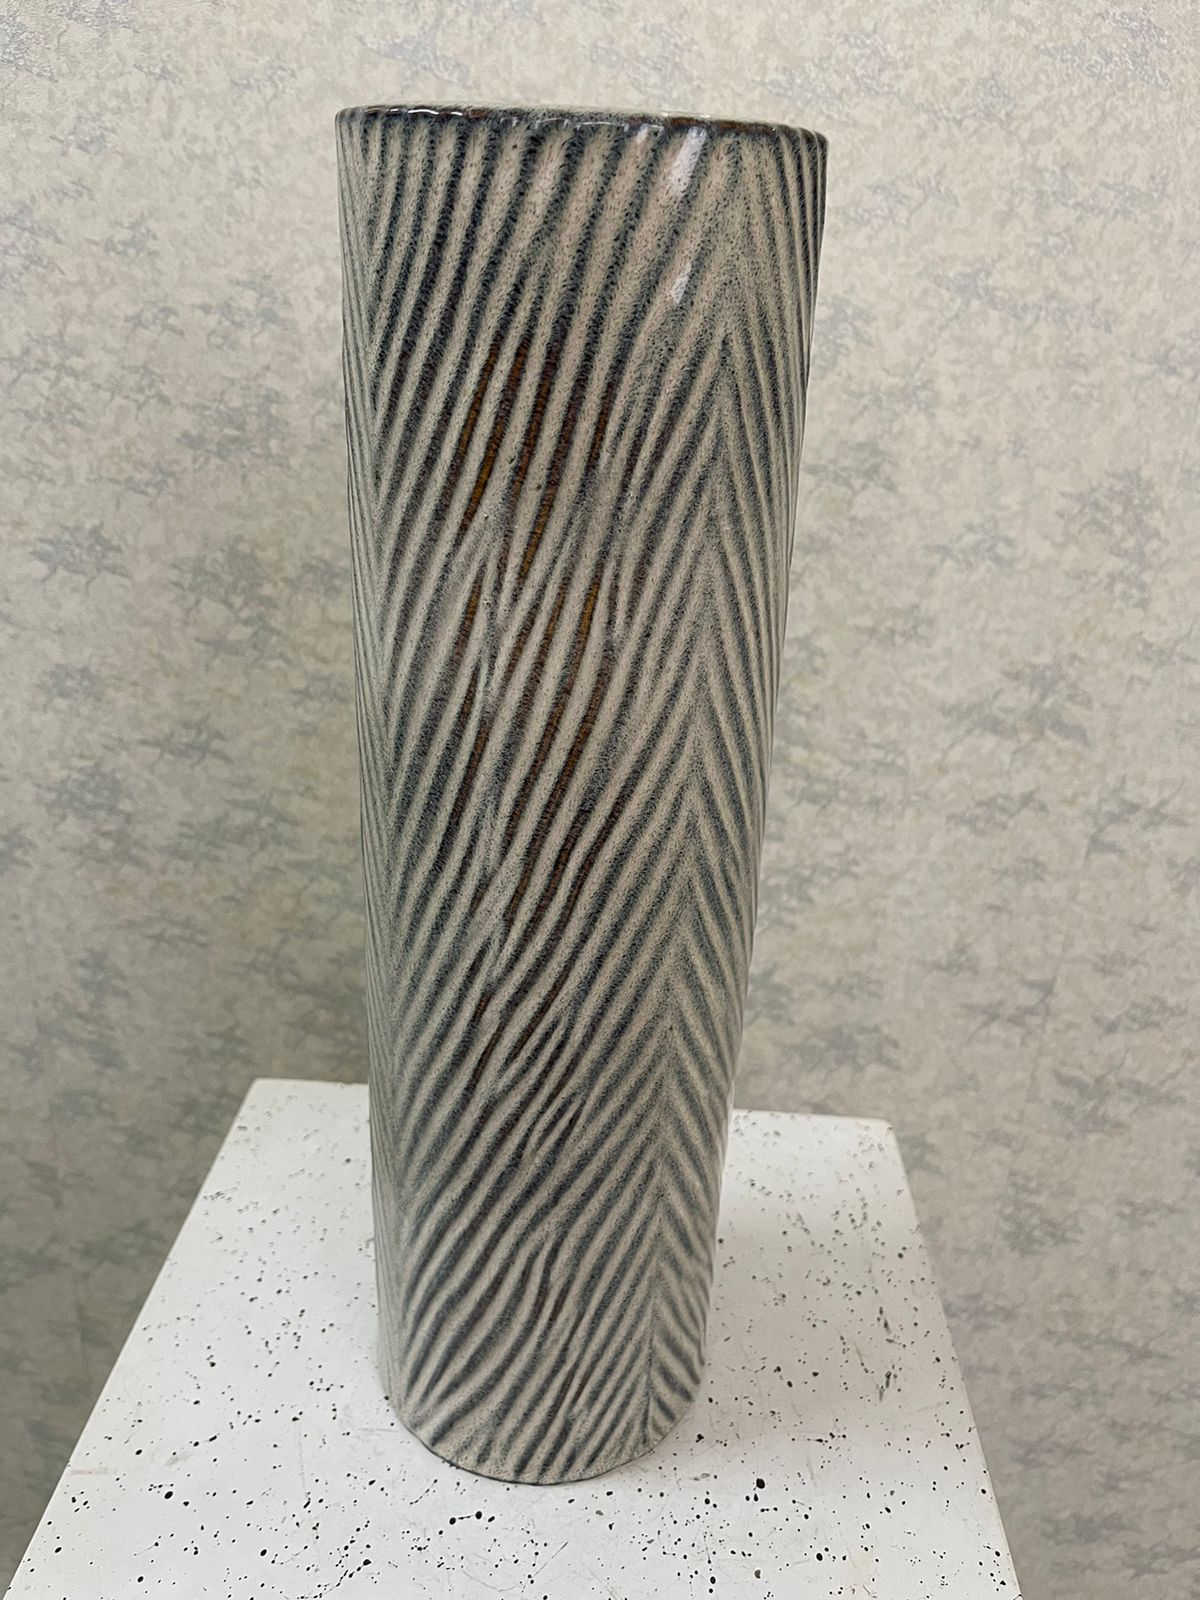 Ceramic Tall Vase With Design